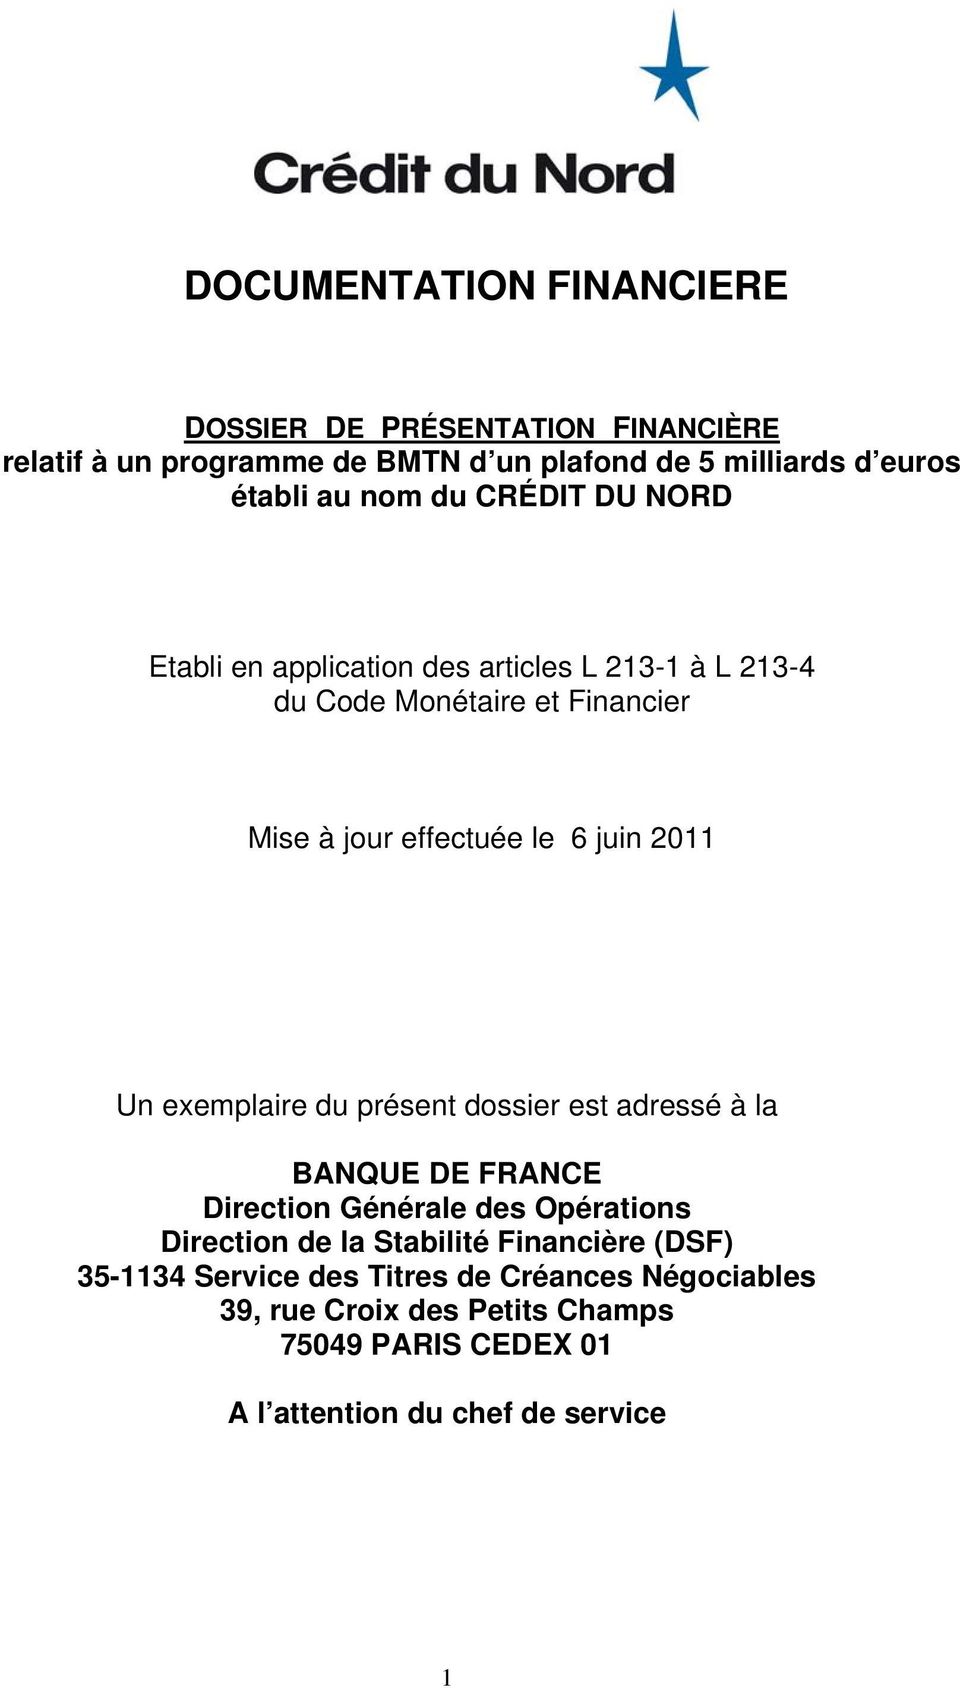 Un exemplaire du présent dossier est adressé à la BANQUE DE FRANCE Direction Générale des Opérations Direction de la Stabilité Financière